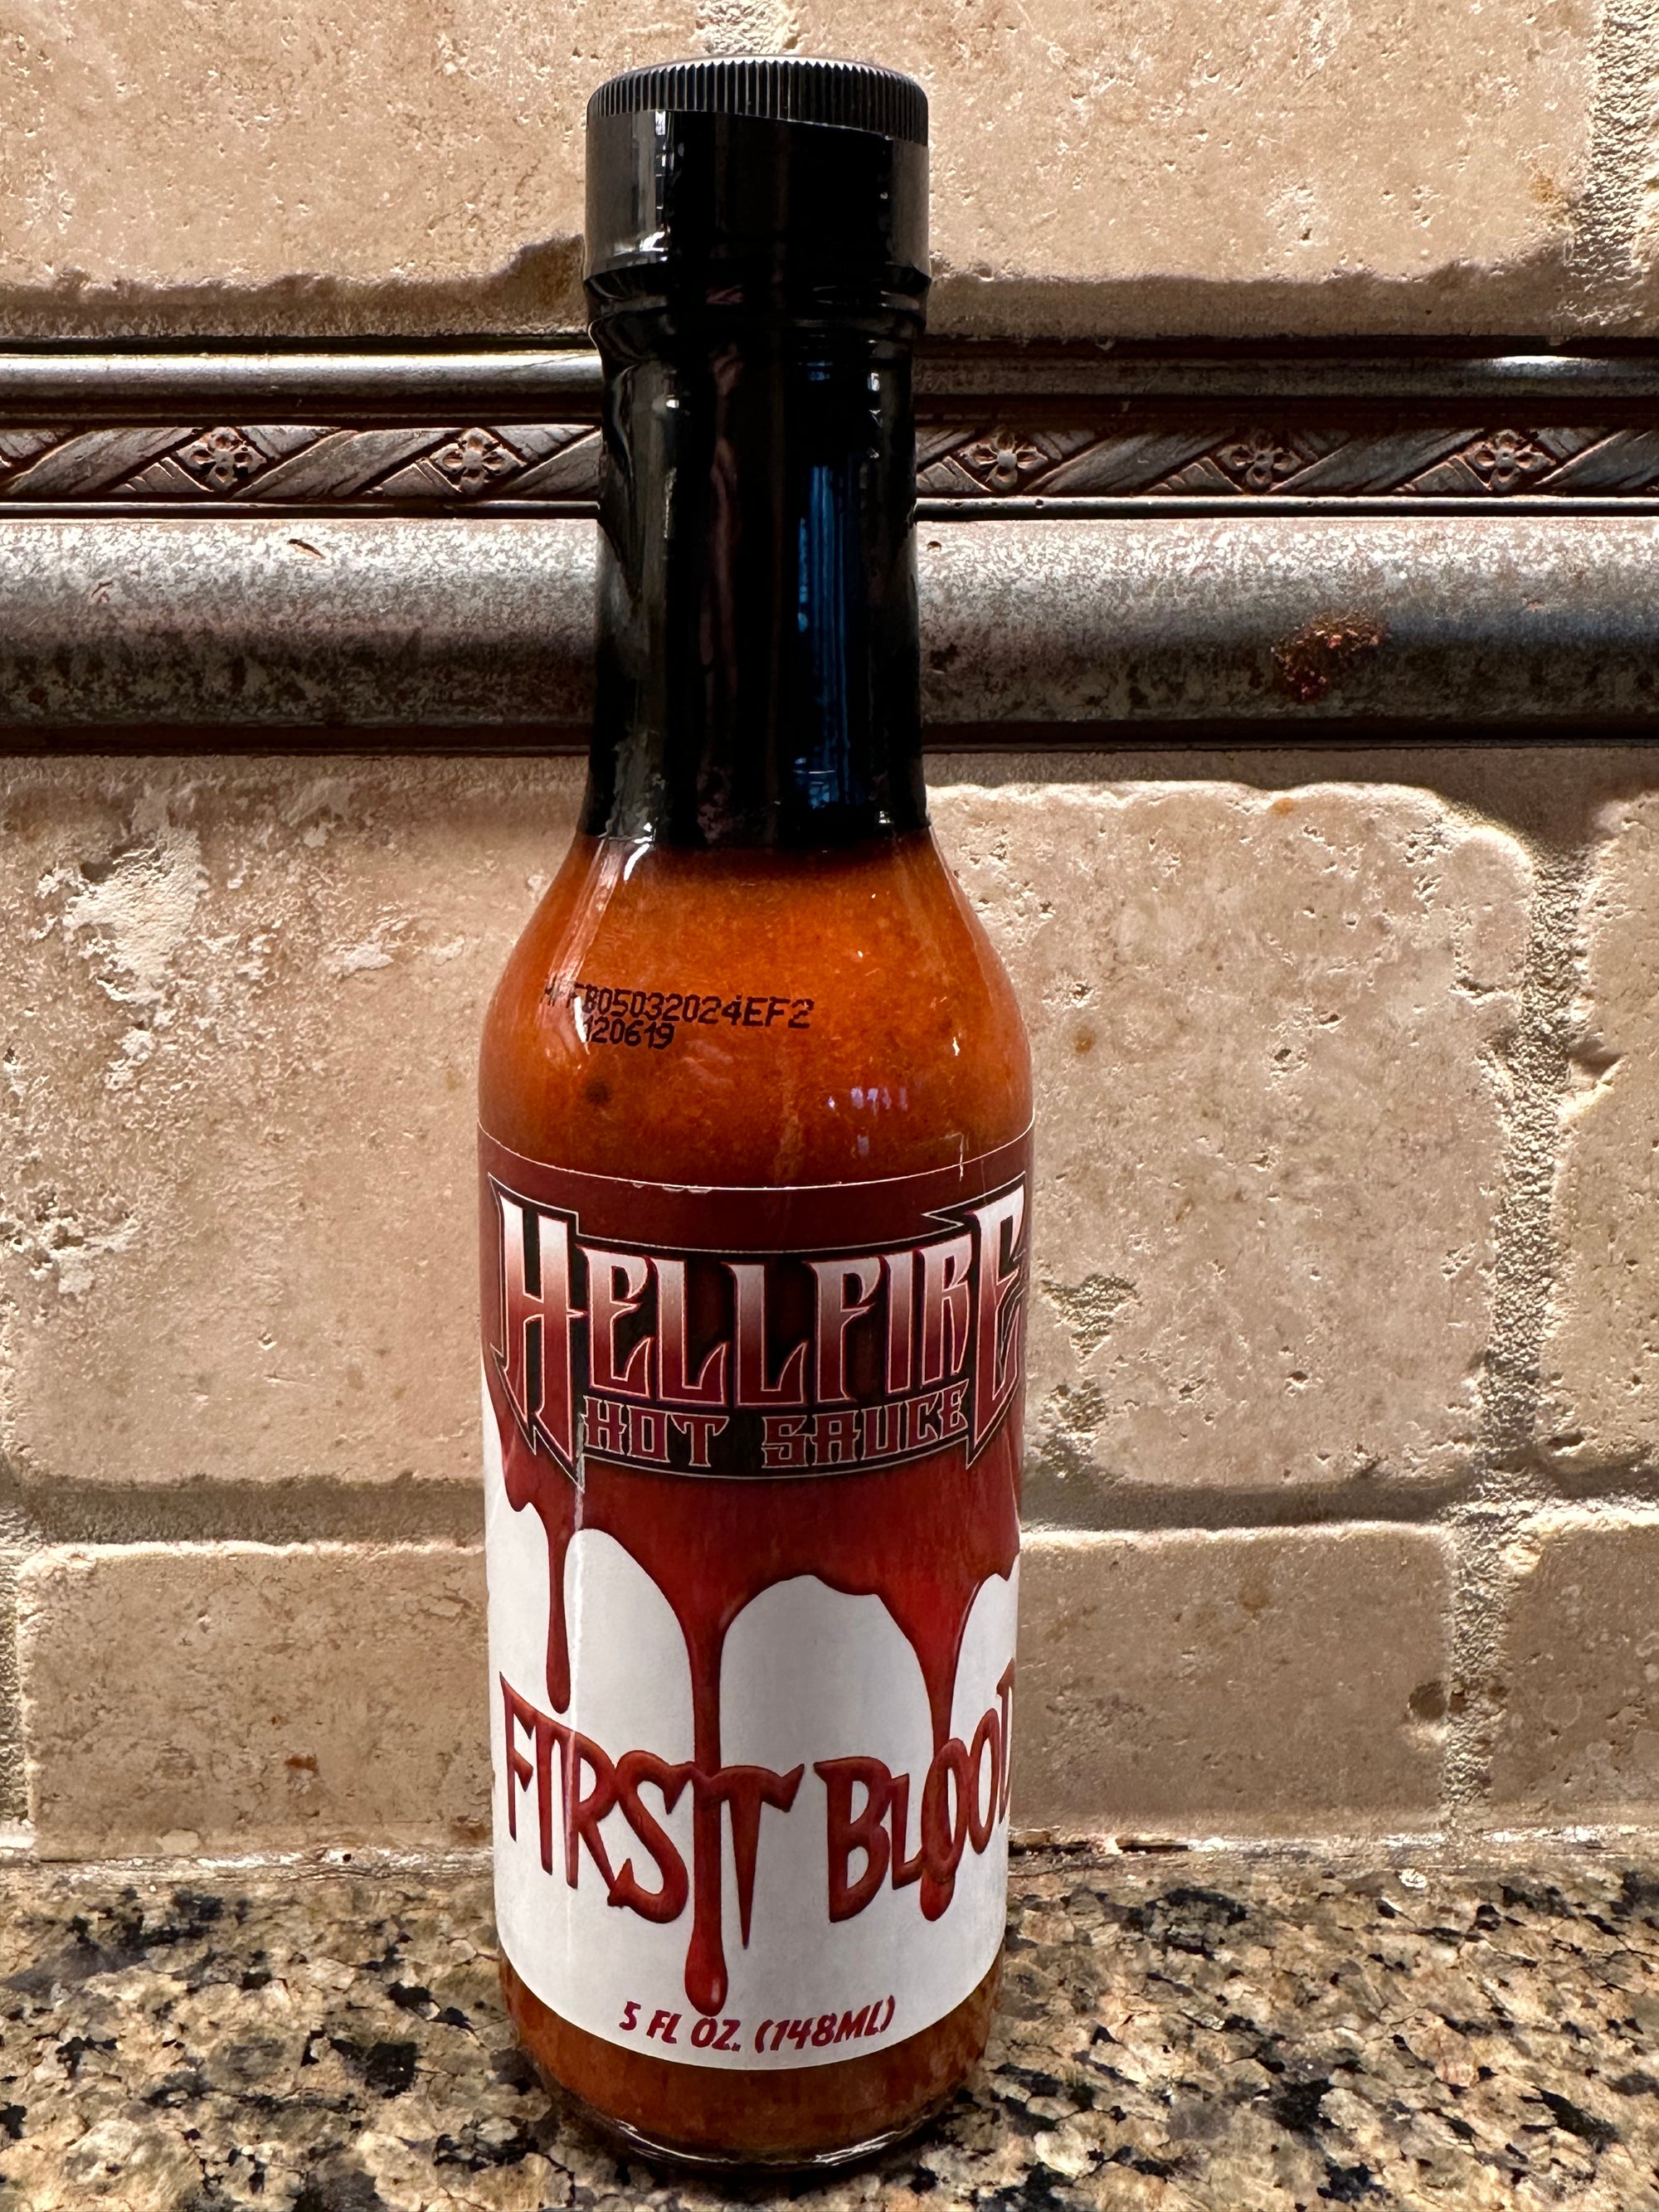 Hellfire First Blood Hot Sauce